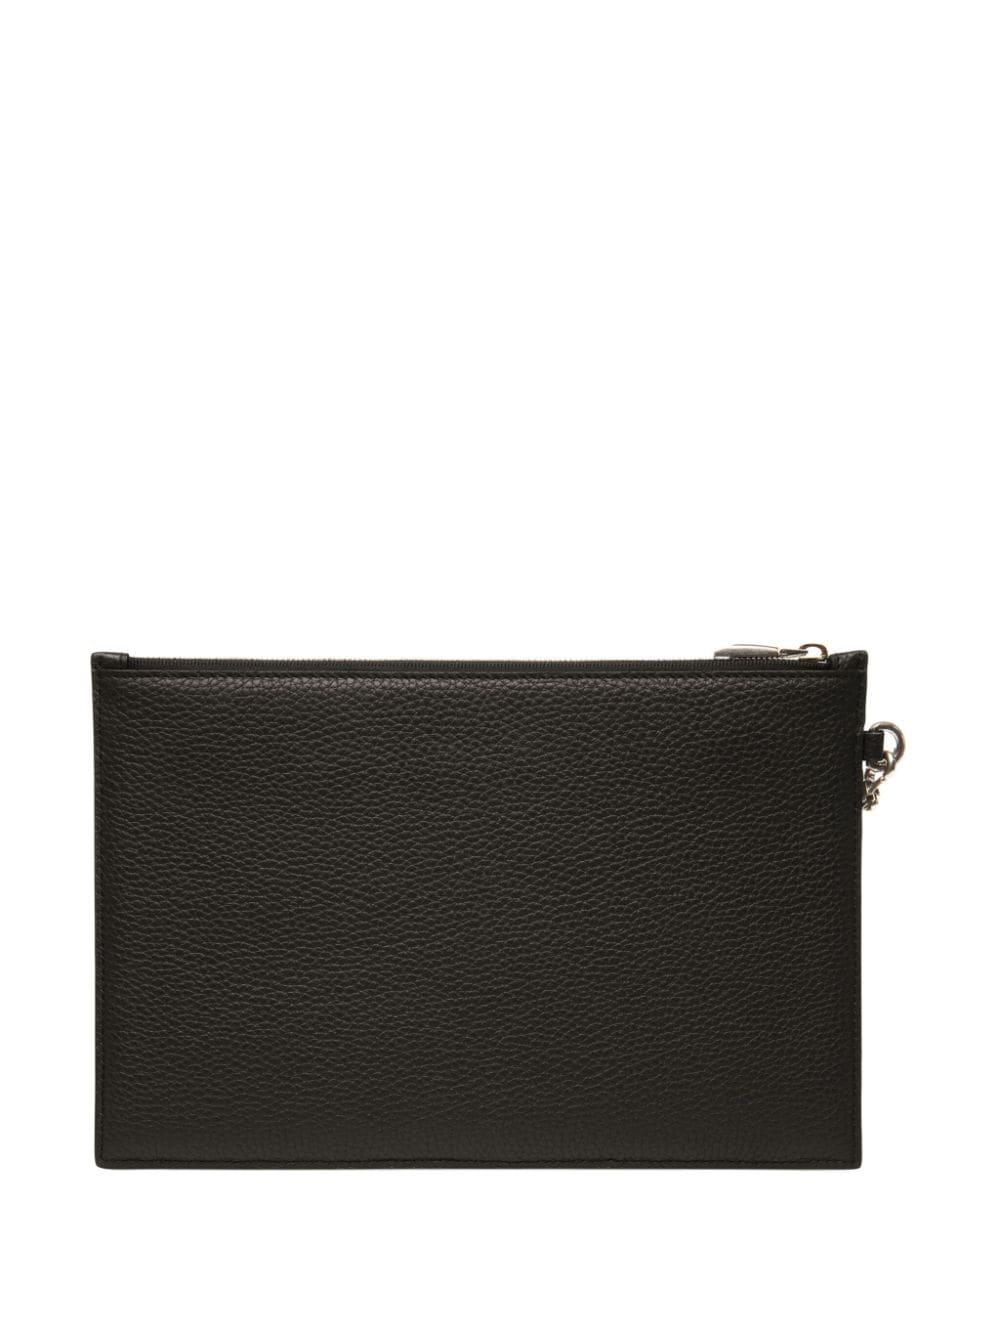 Bally Ribbon zipped leather envelope wallet - Black